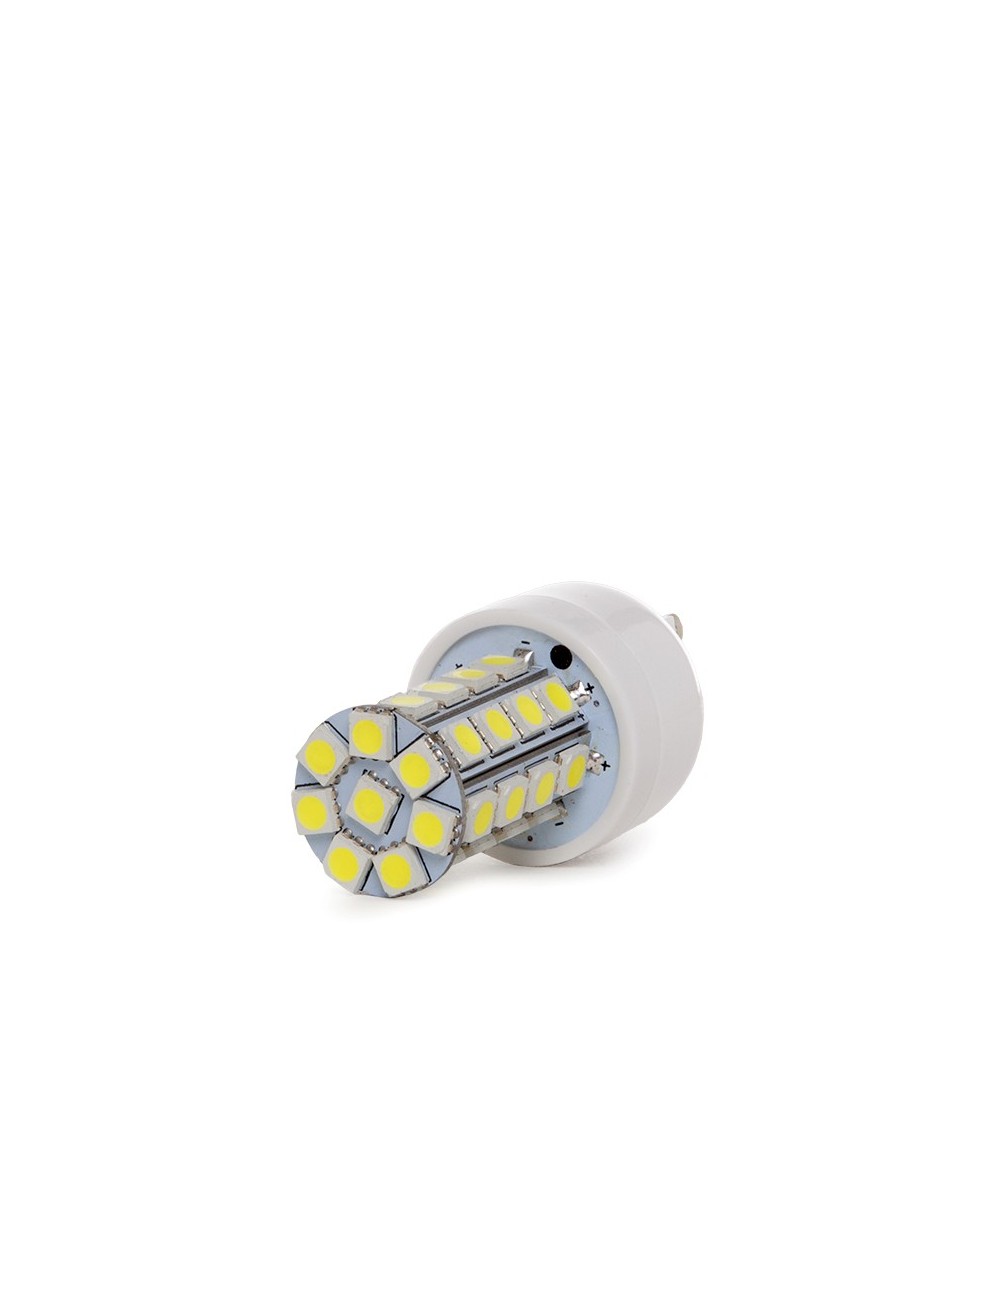 Ampoule LED G9 5W 440Lm 6000ºK 40.000H [KD-G9-5050-36-CW]